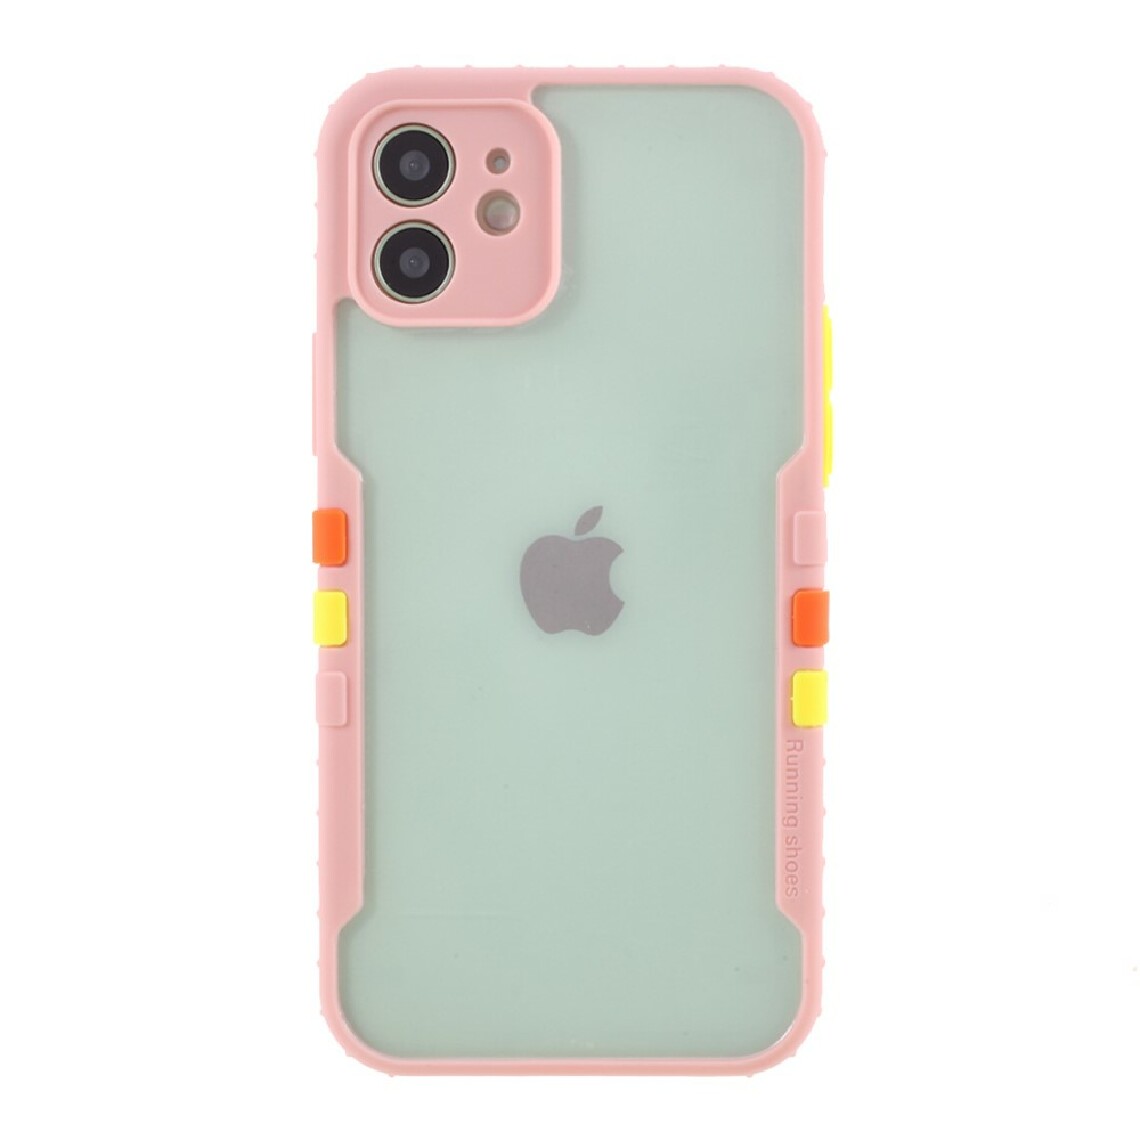 Other - Coque en TPU + acrylique hybride de style sportif rose pour votre Apple iPhone 12 mini - Coque, étui smartphone